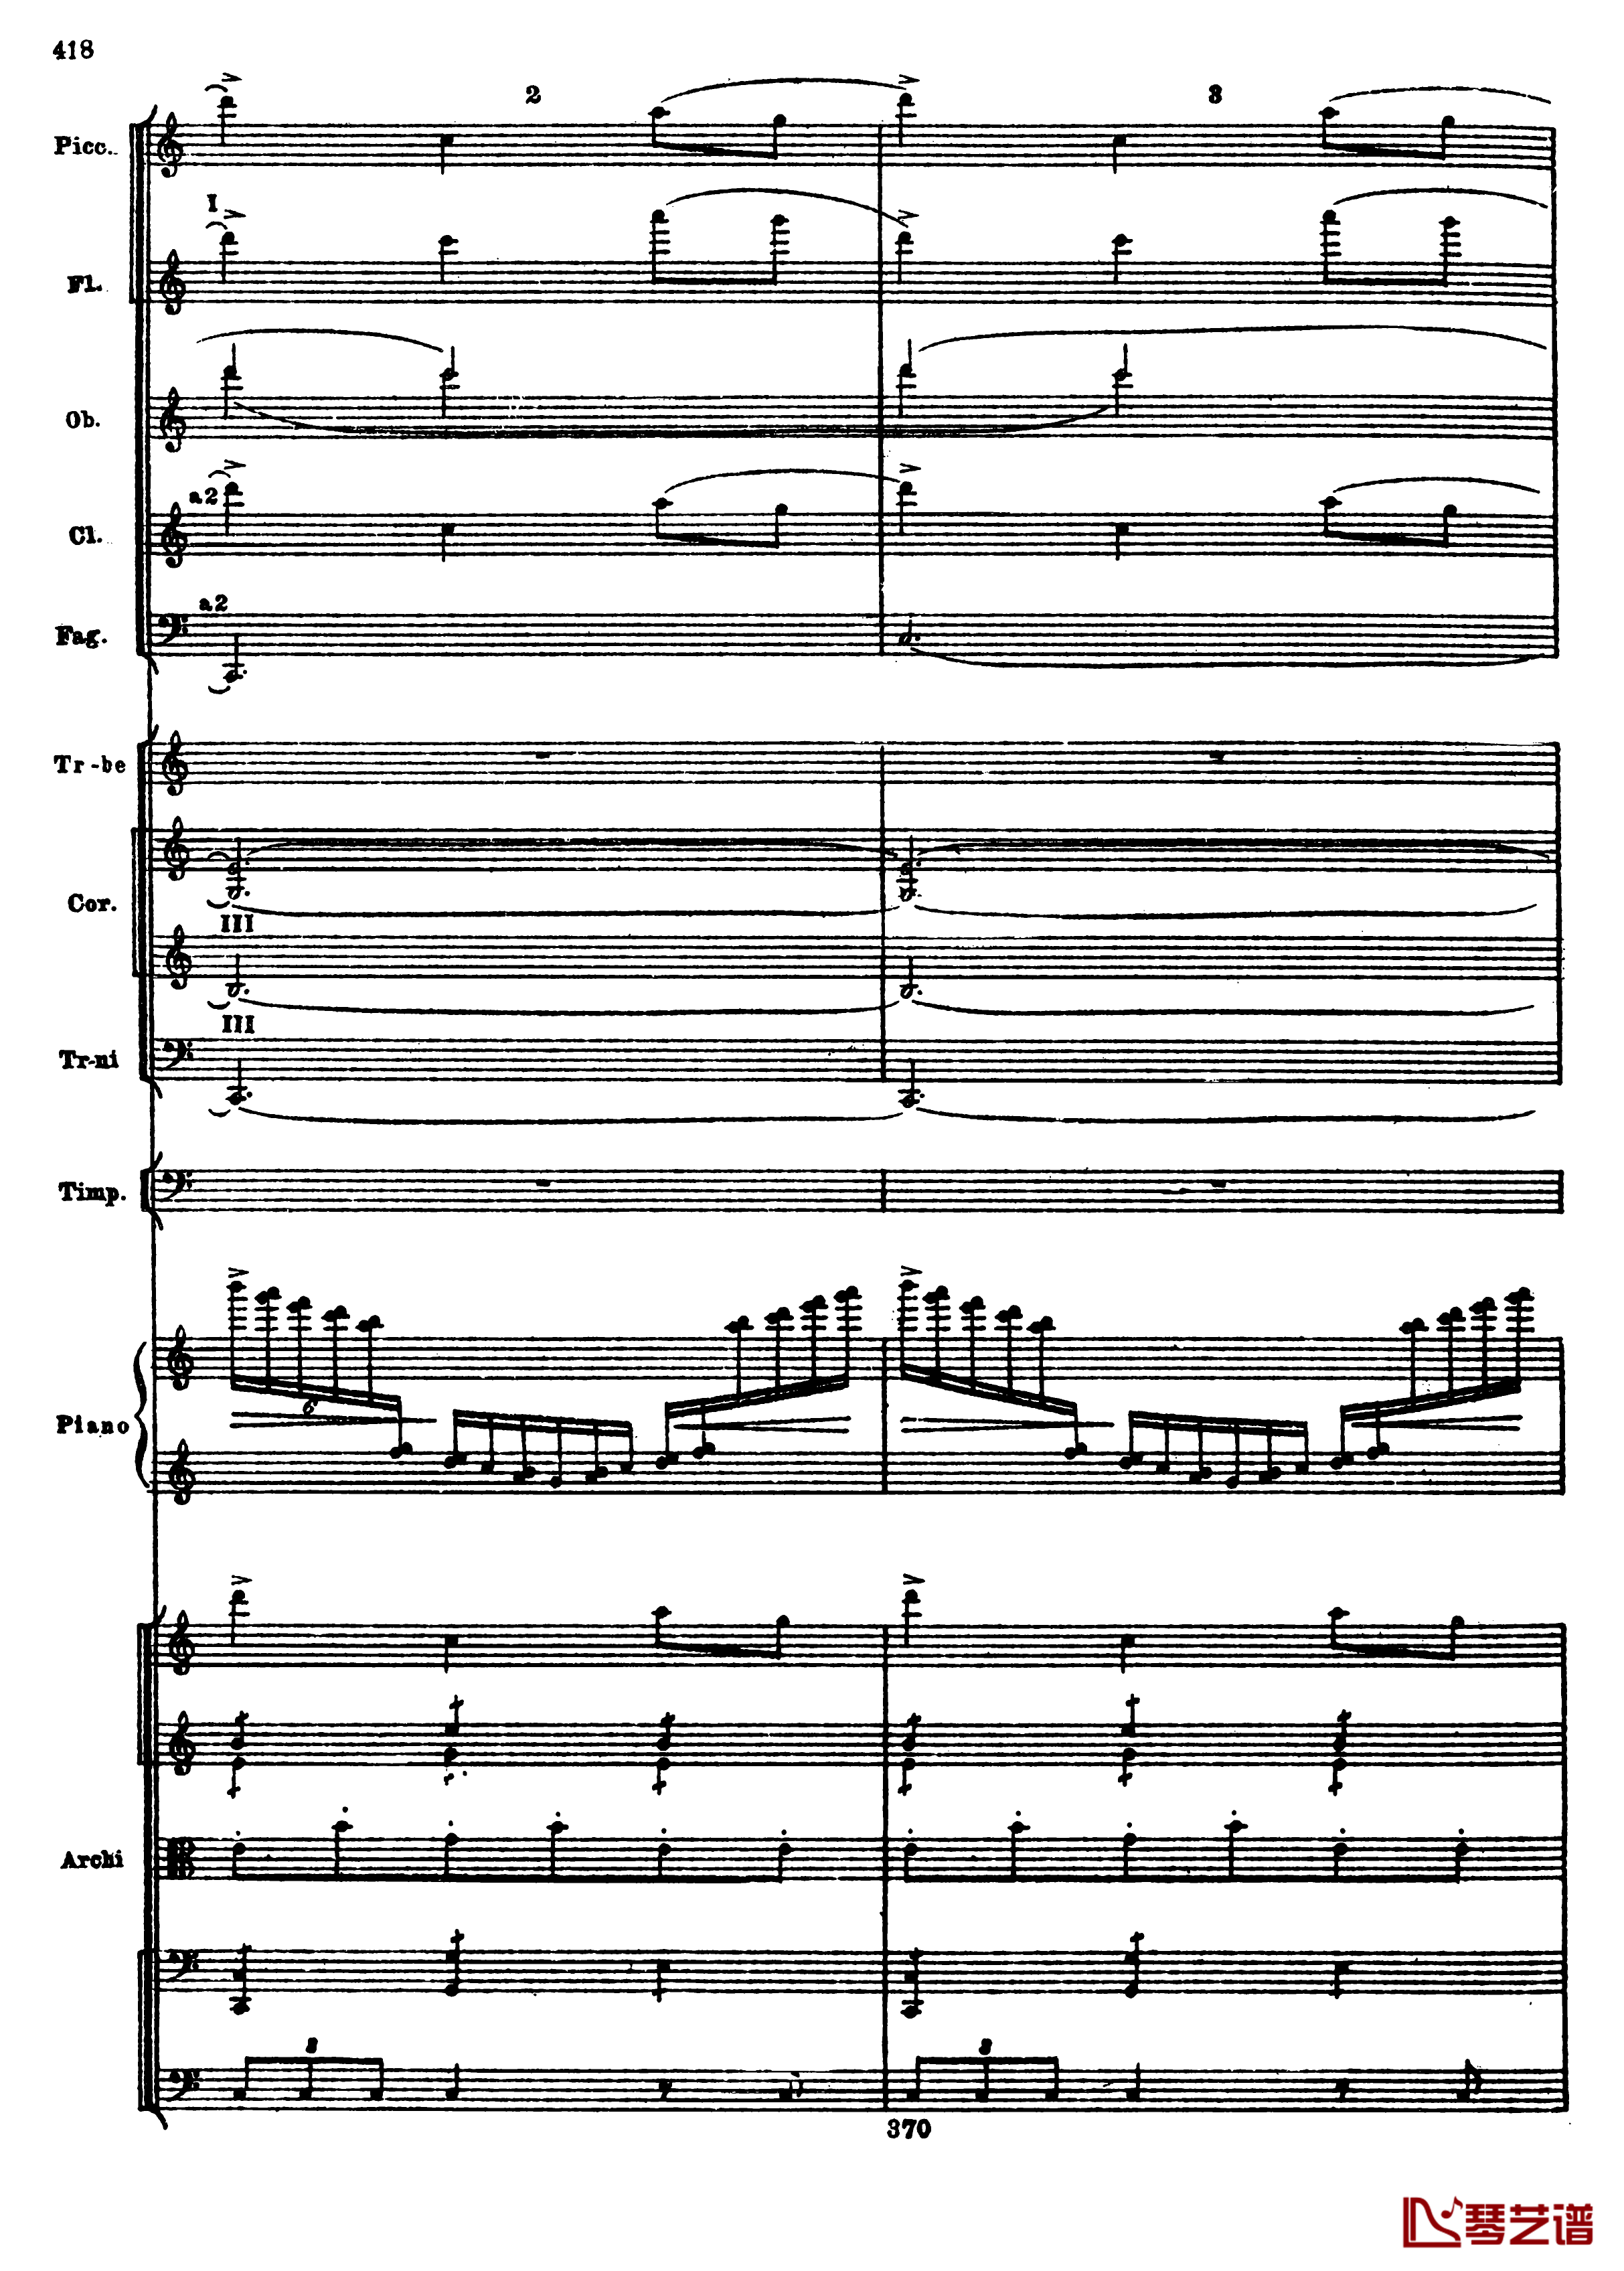 普罗科菲耶夫第三钢琴协奏曲钢琴谱-总谱-普罗科非耶夫150